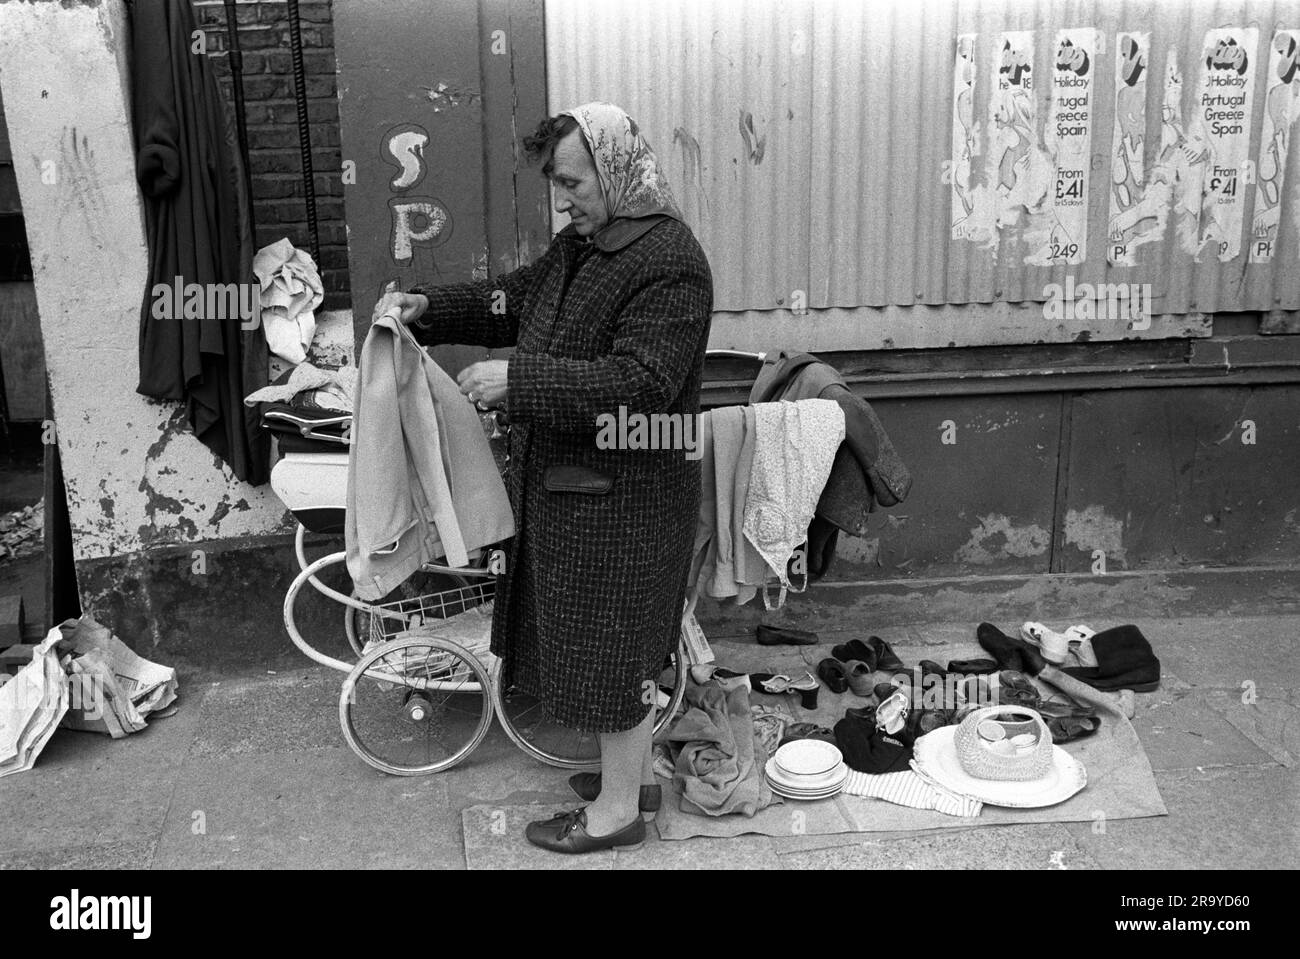 Arbeitslos, Armut London 1970er UK. Eine arbeitslose Frau verkauft alte Kleidung und Schrott von Kinderwagen, um ihr armes Leben zu vervollständigen. Whitechapel, London, England, ca. 1972. 70s HOMER SYKES. Stockfoto